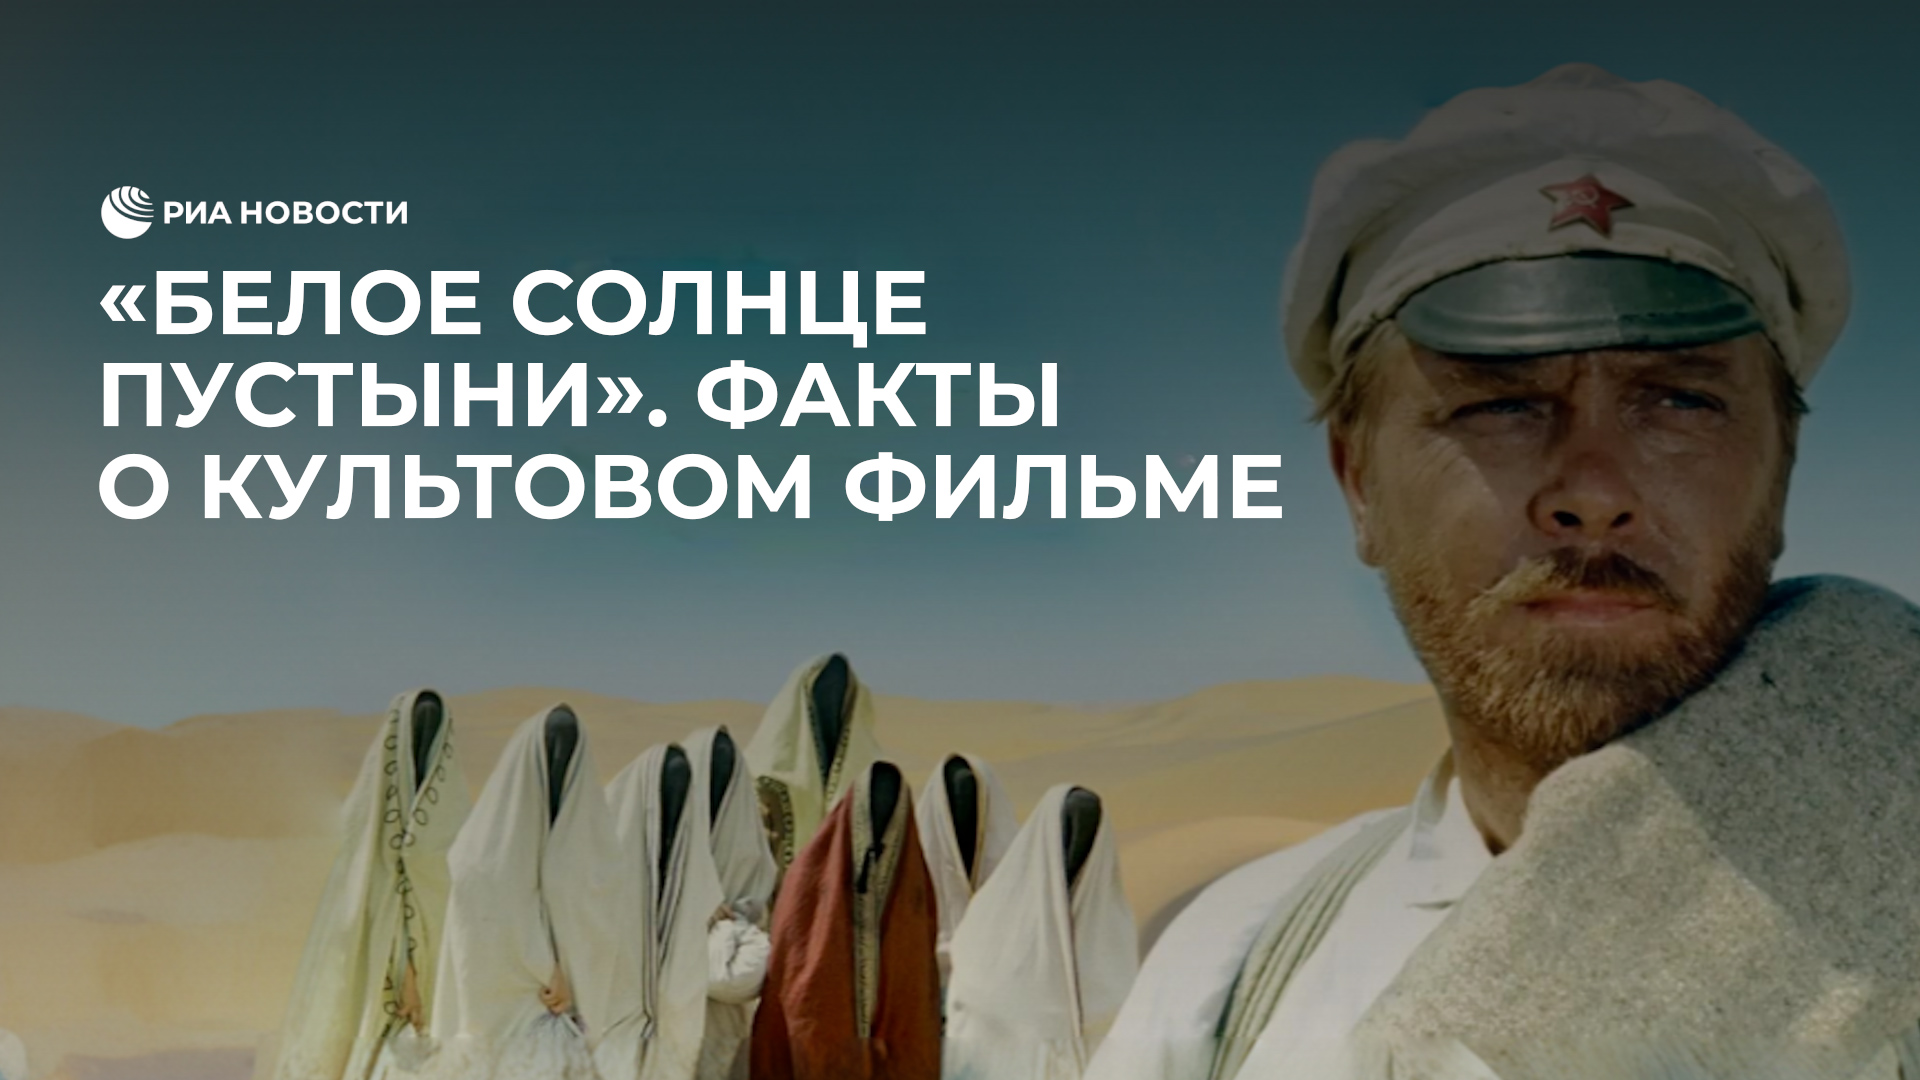 "Белое солнце пустыни": факты о культовом фильме